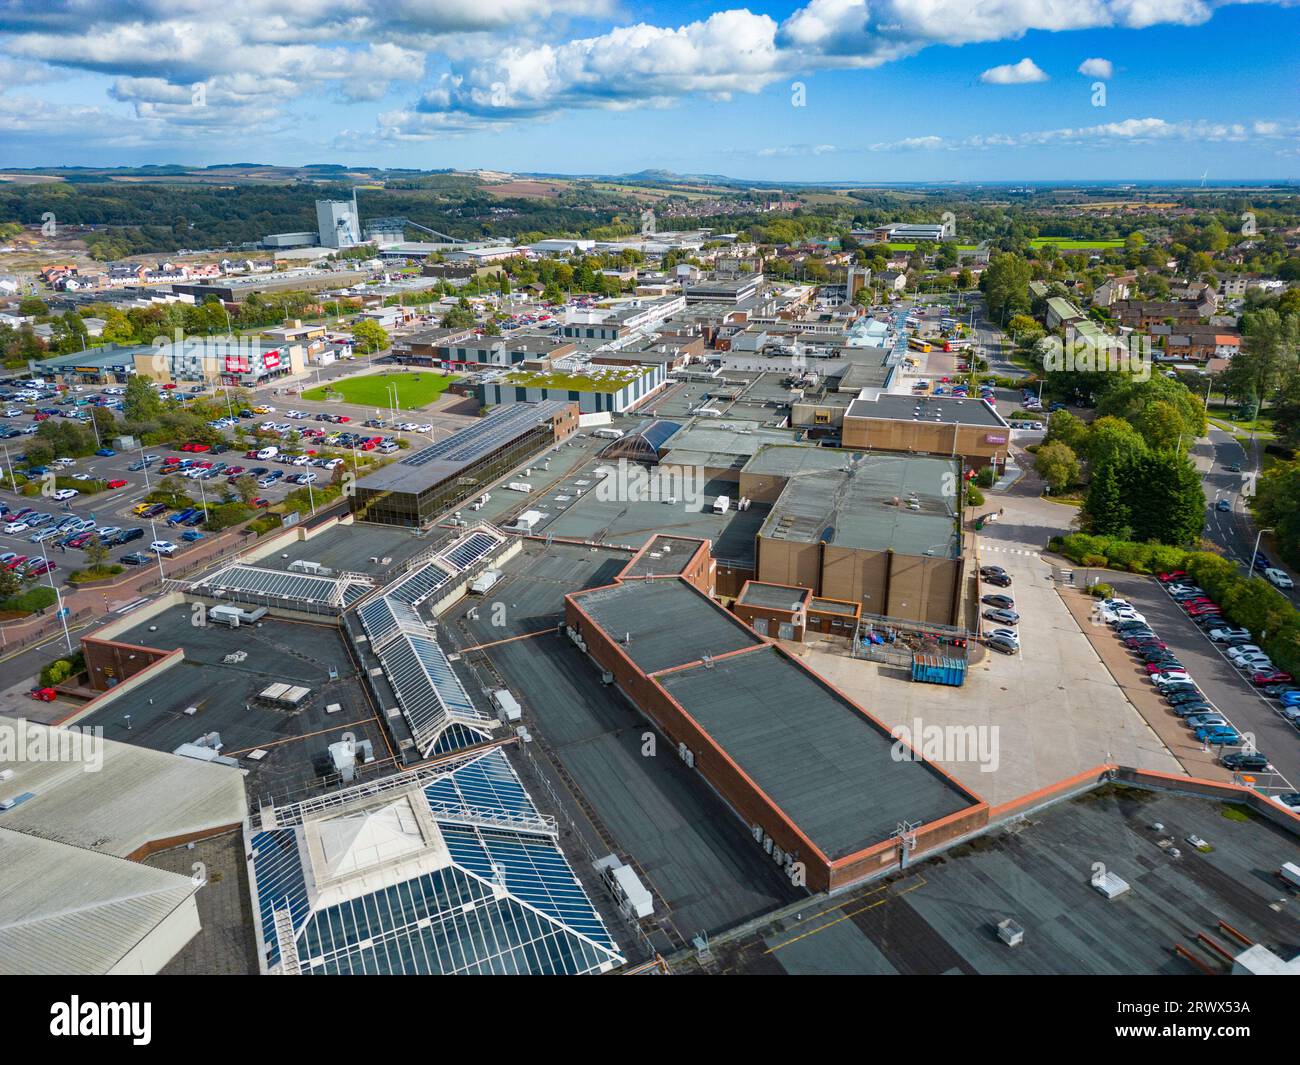 Vue aérienne du centre commercial Kingdom dans le parc de vente au détail dans le centre-ville Glenrothes nouvelle ville , Fife, Écosse, Royaume-Uni Banque D'Images